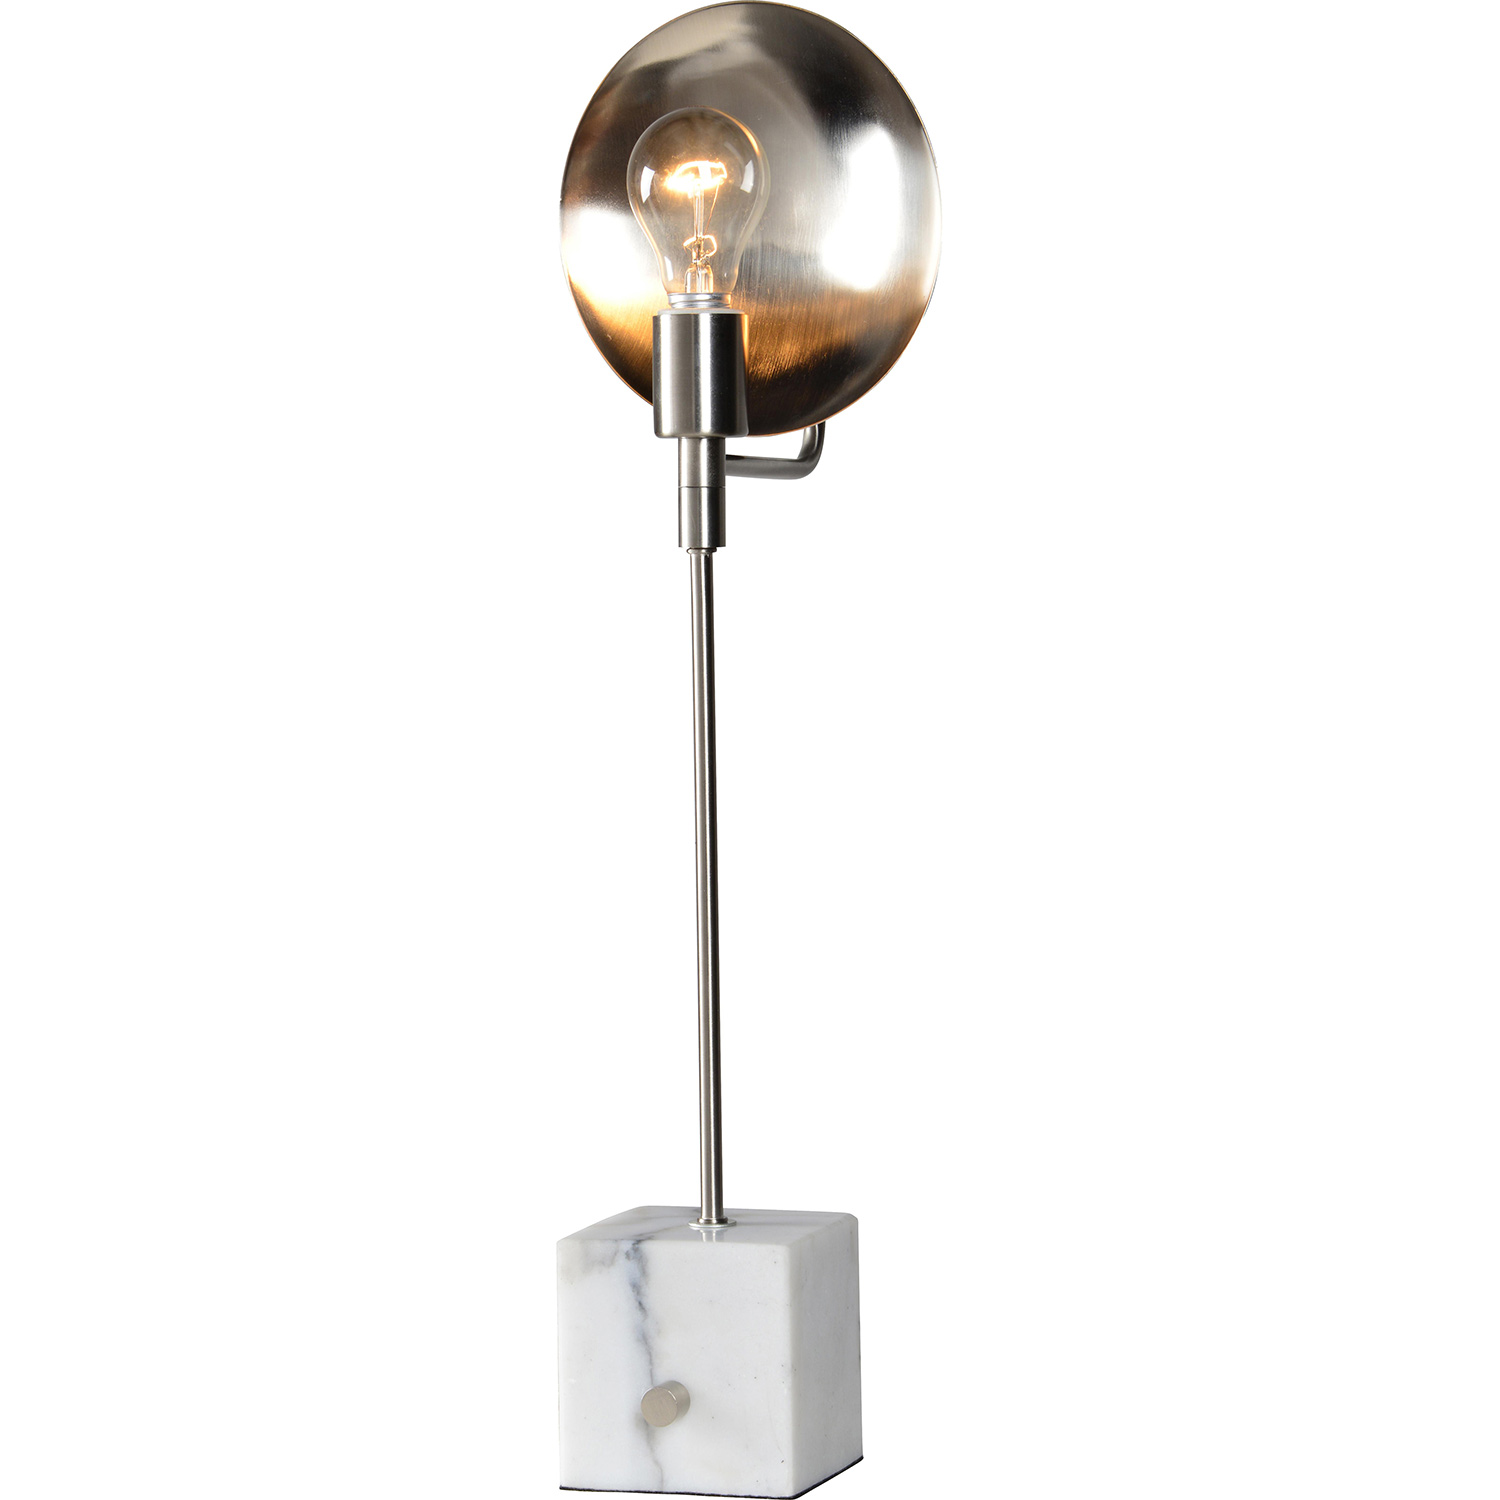 Ren-Wil Laurea Floor Lamp Table Lamp - SatinNickel